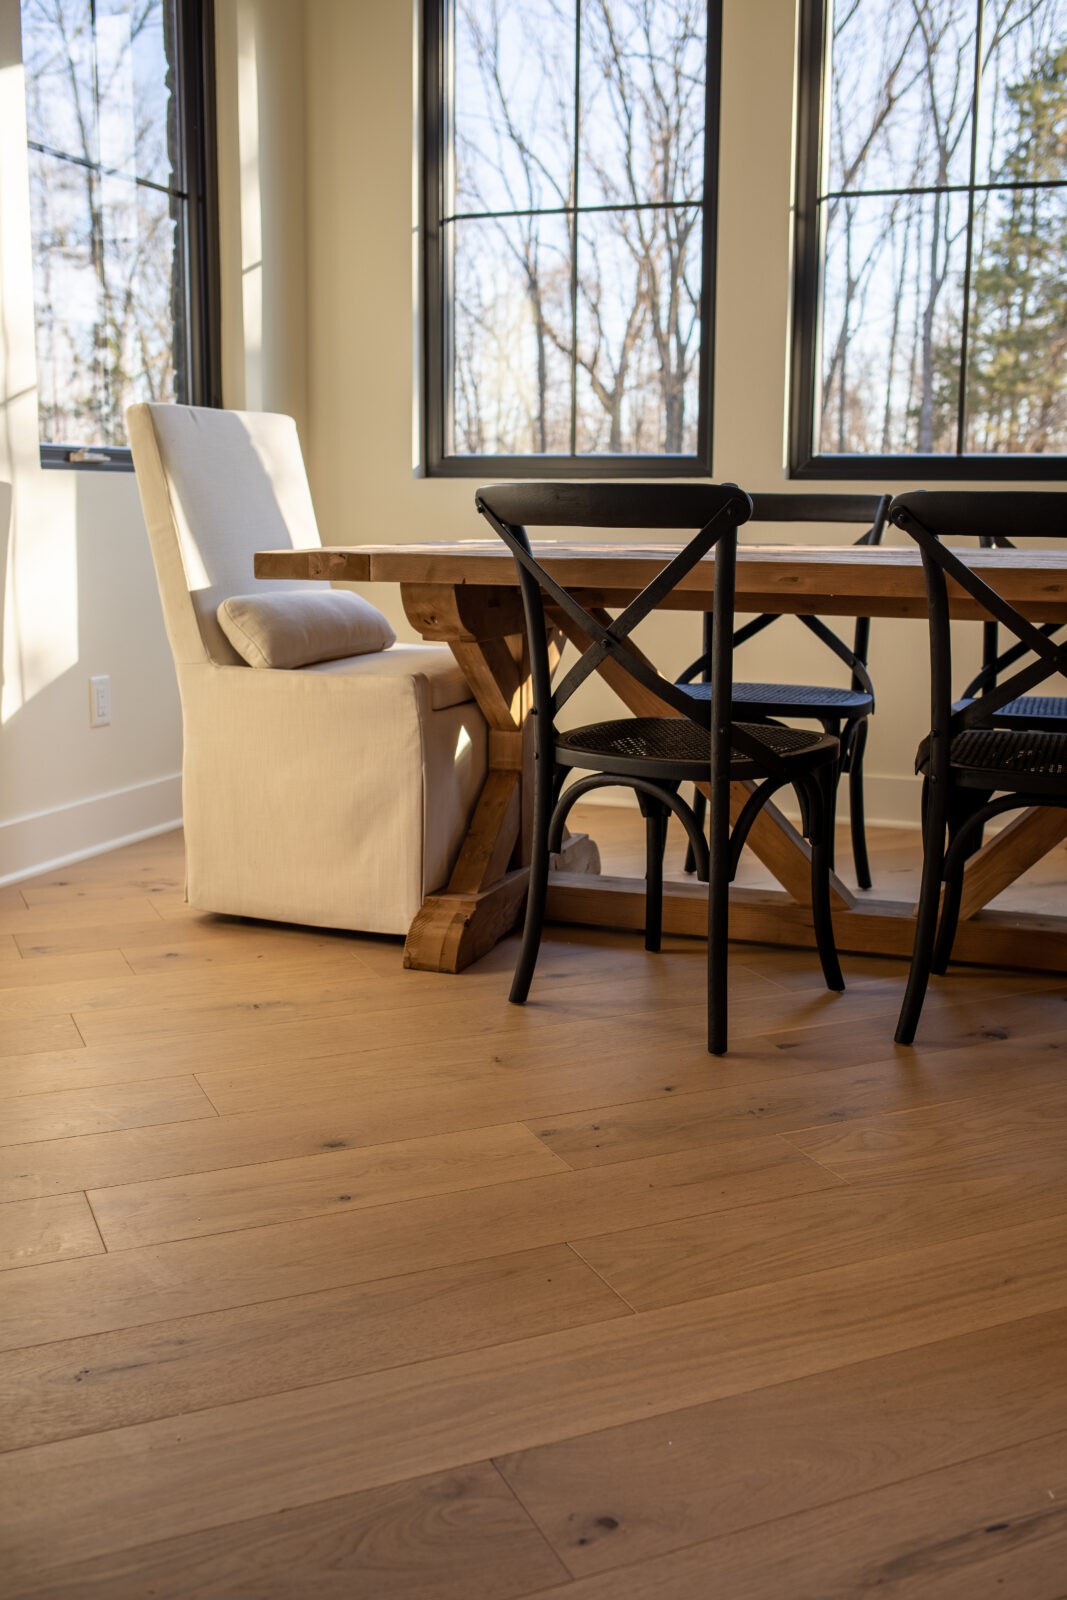 Hardwood floors in sitting room | Carpetland USA